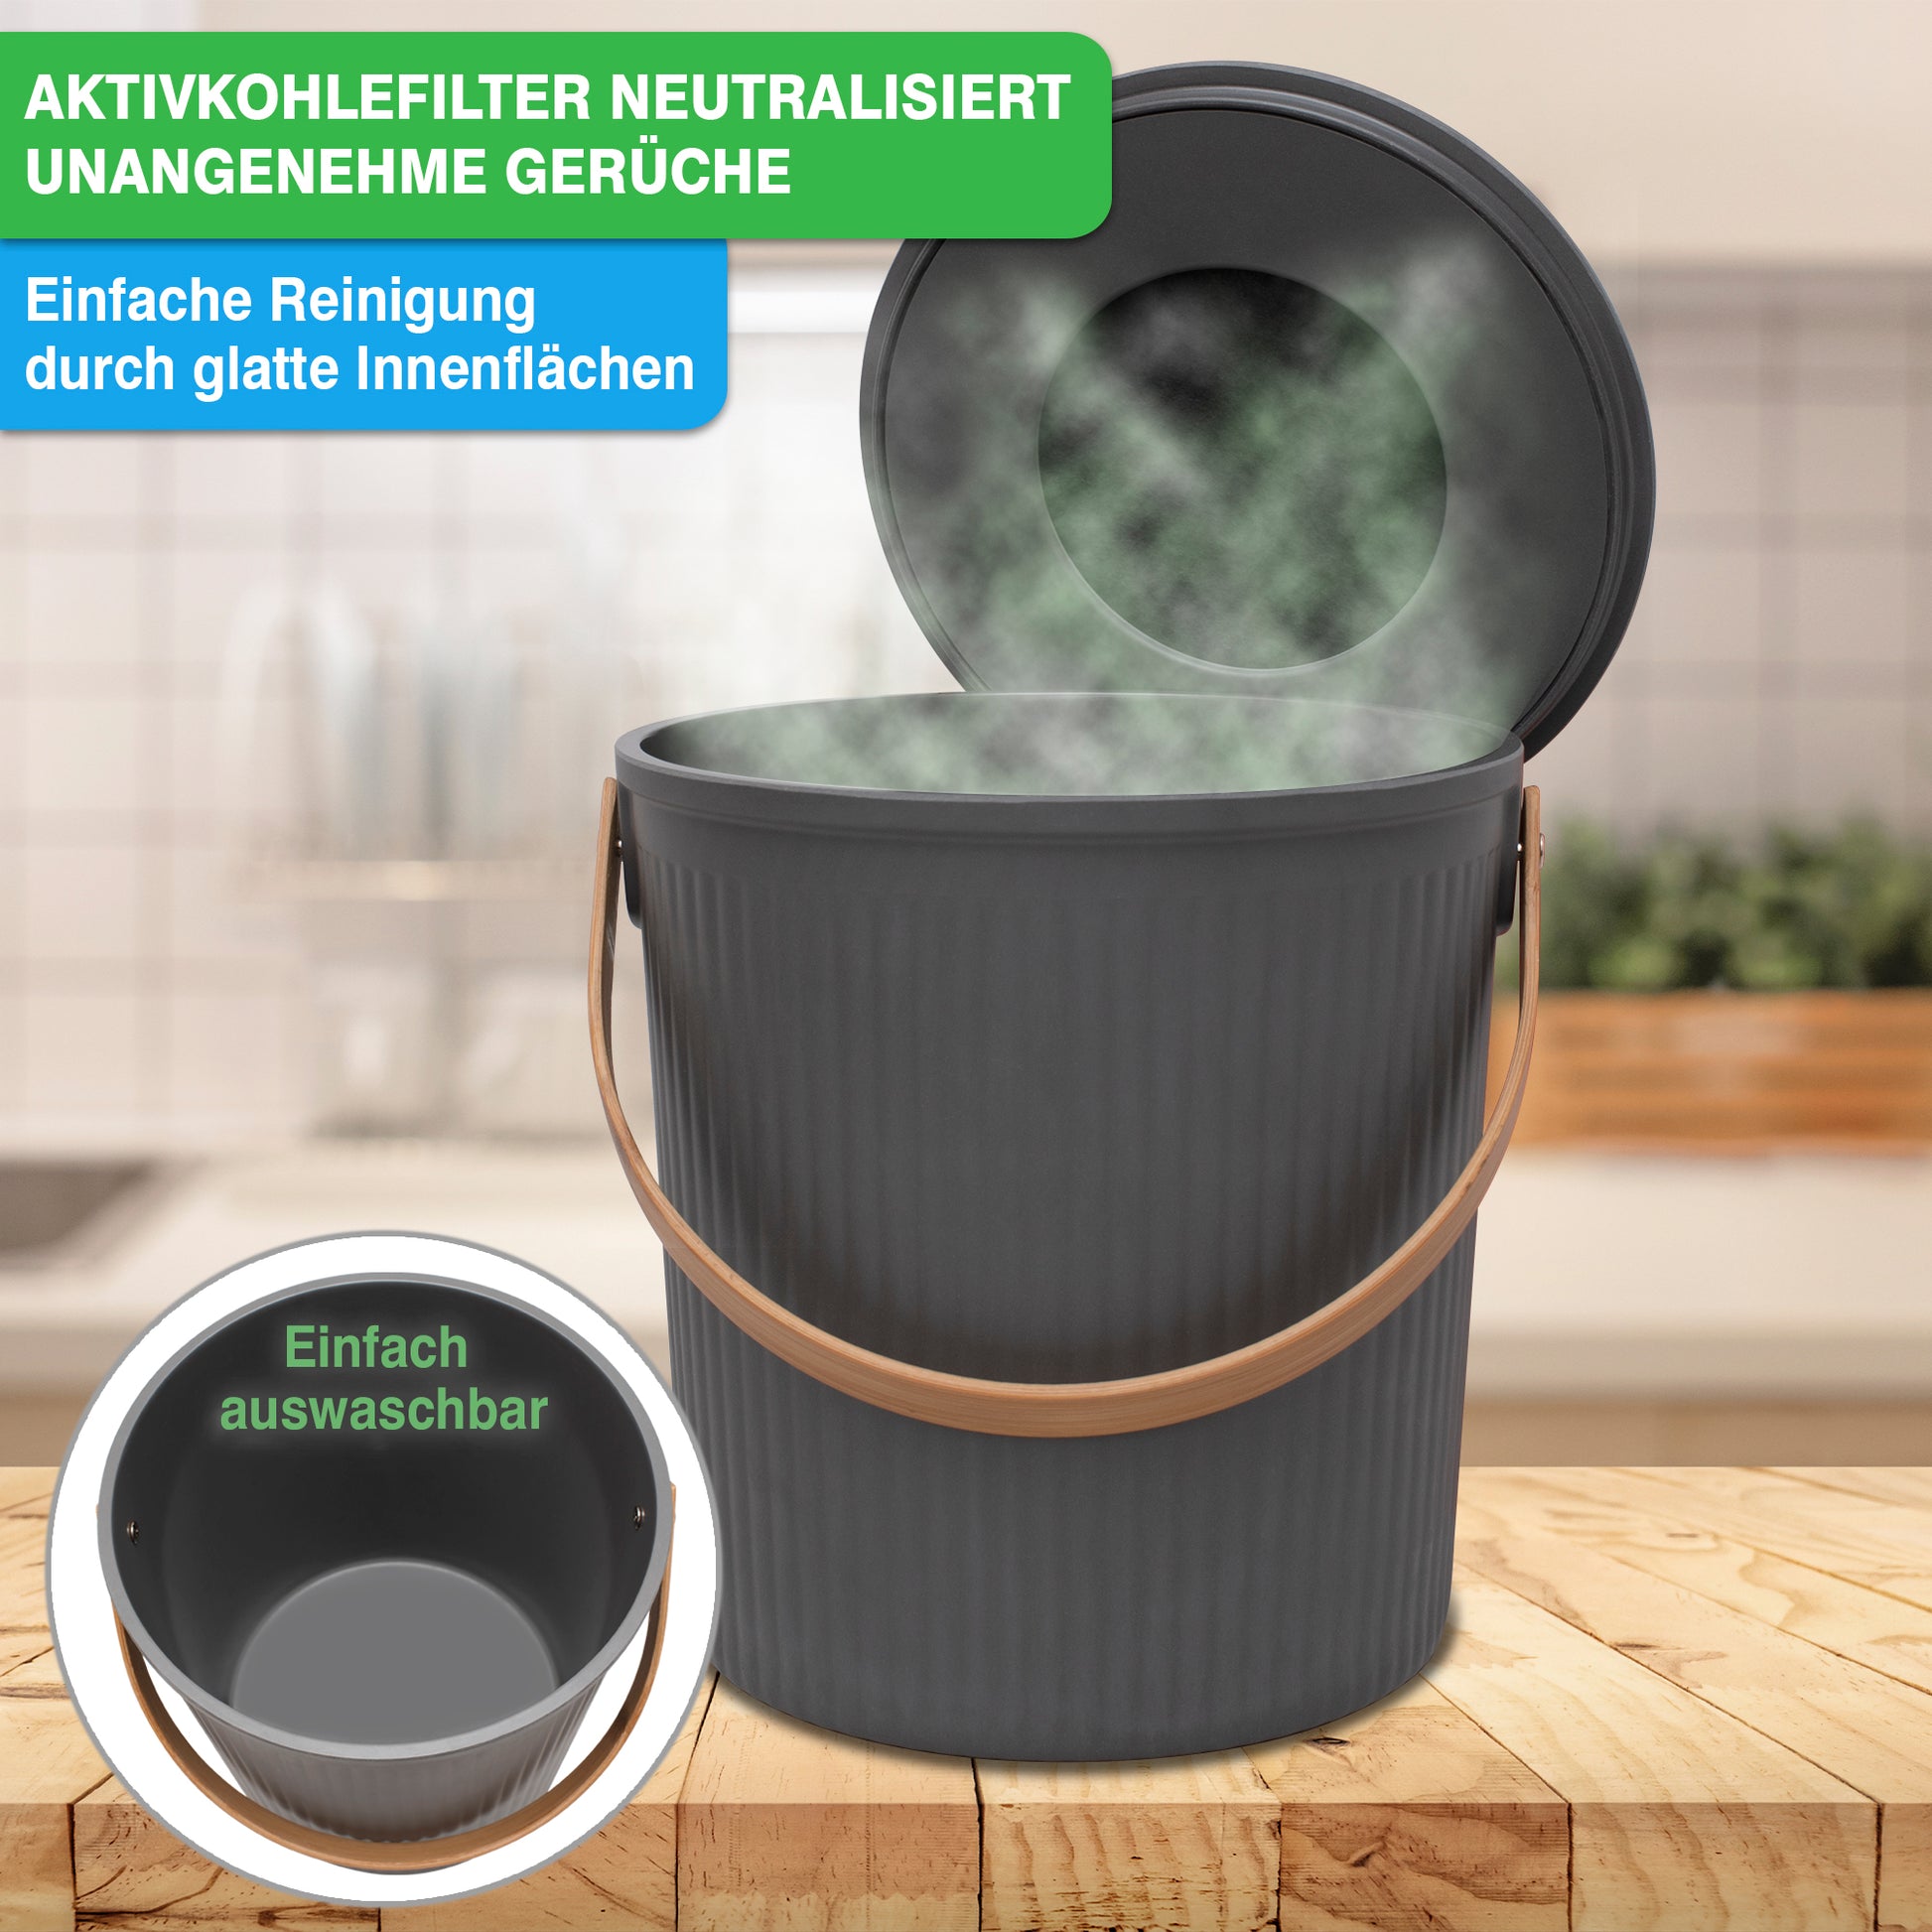 Ein YourCasa® Küchen-Biomülleimer mit Aktivkohlefilter zur Neutralisierung von Gerüchen, glatten Innenflächen zur einfachen Reinigung und abwaschbarem Design.